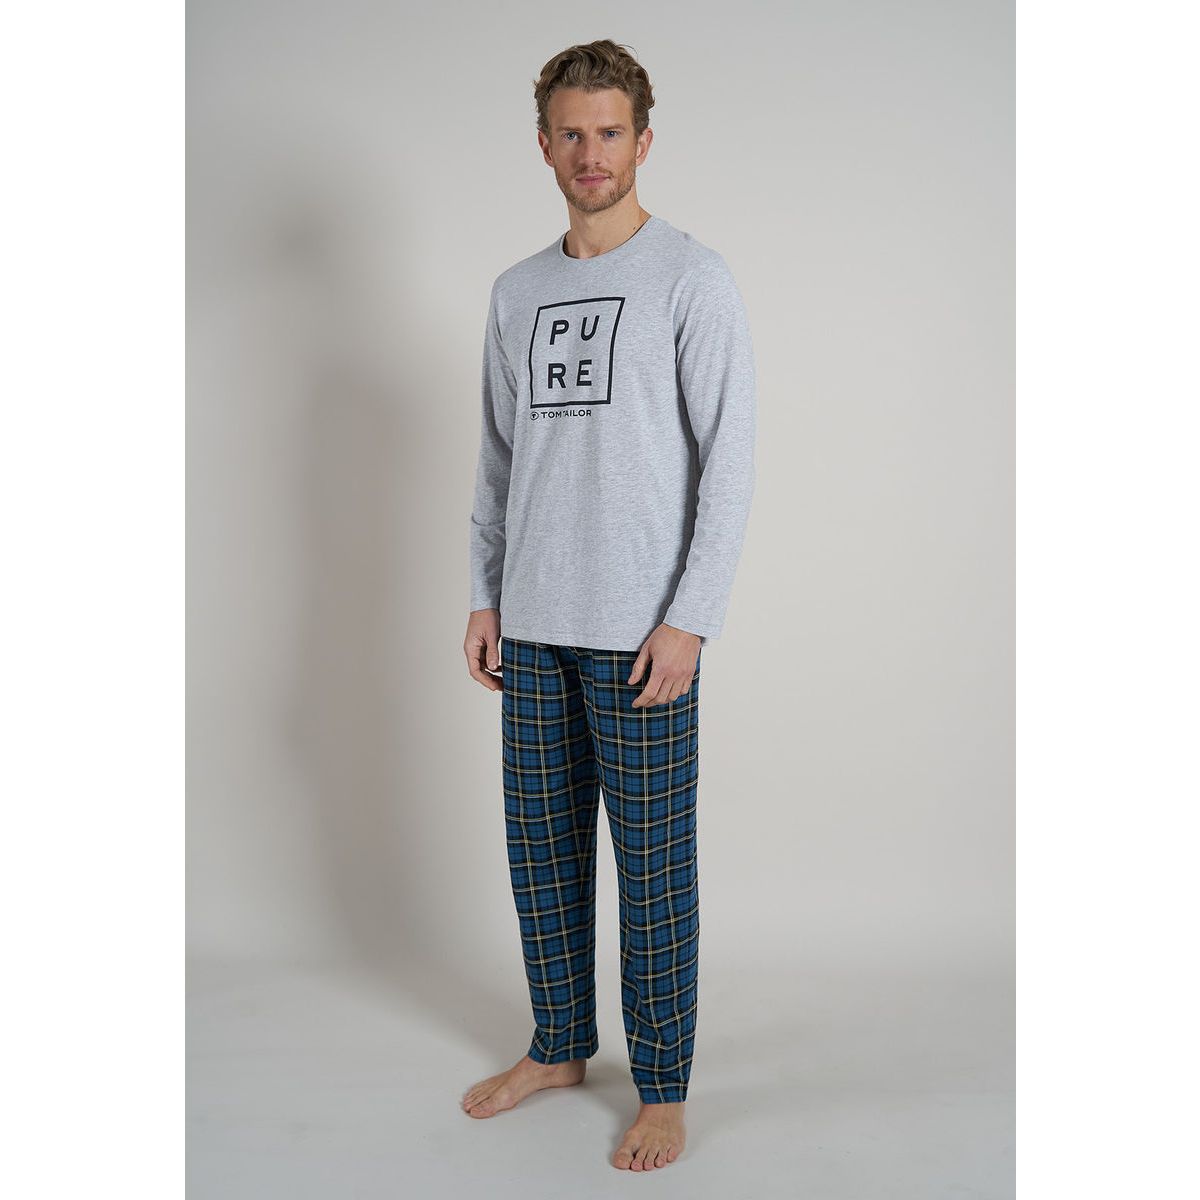 Tom Tailor heren pyjama Pure | Gratis verzending vanaf € 40,- | Gratis  retour | Snel in huis | Online de mooiste pyjama's, nachthemden, ondermode  en meer